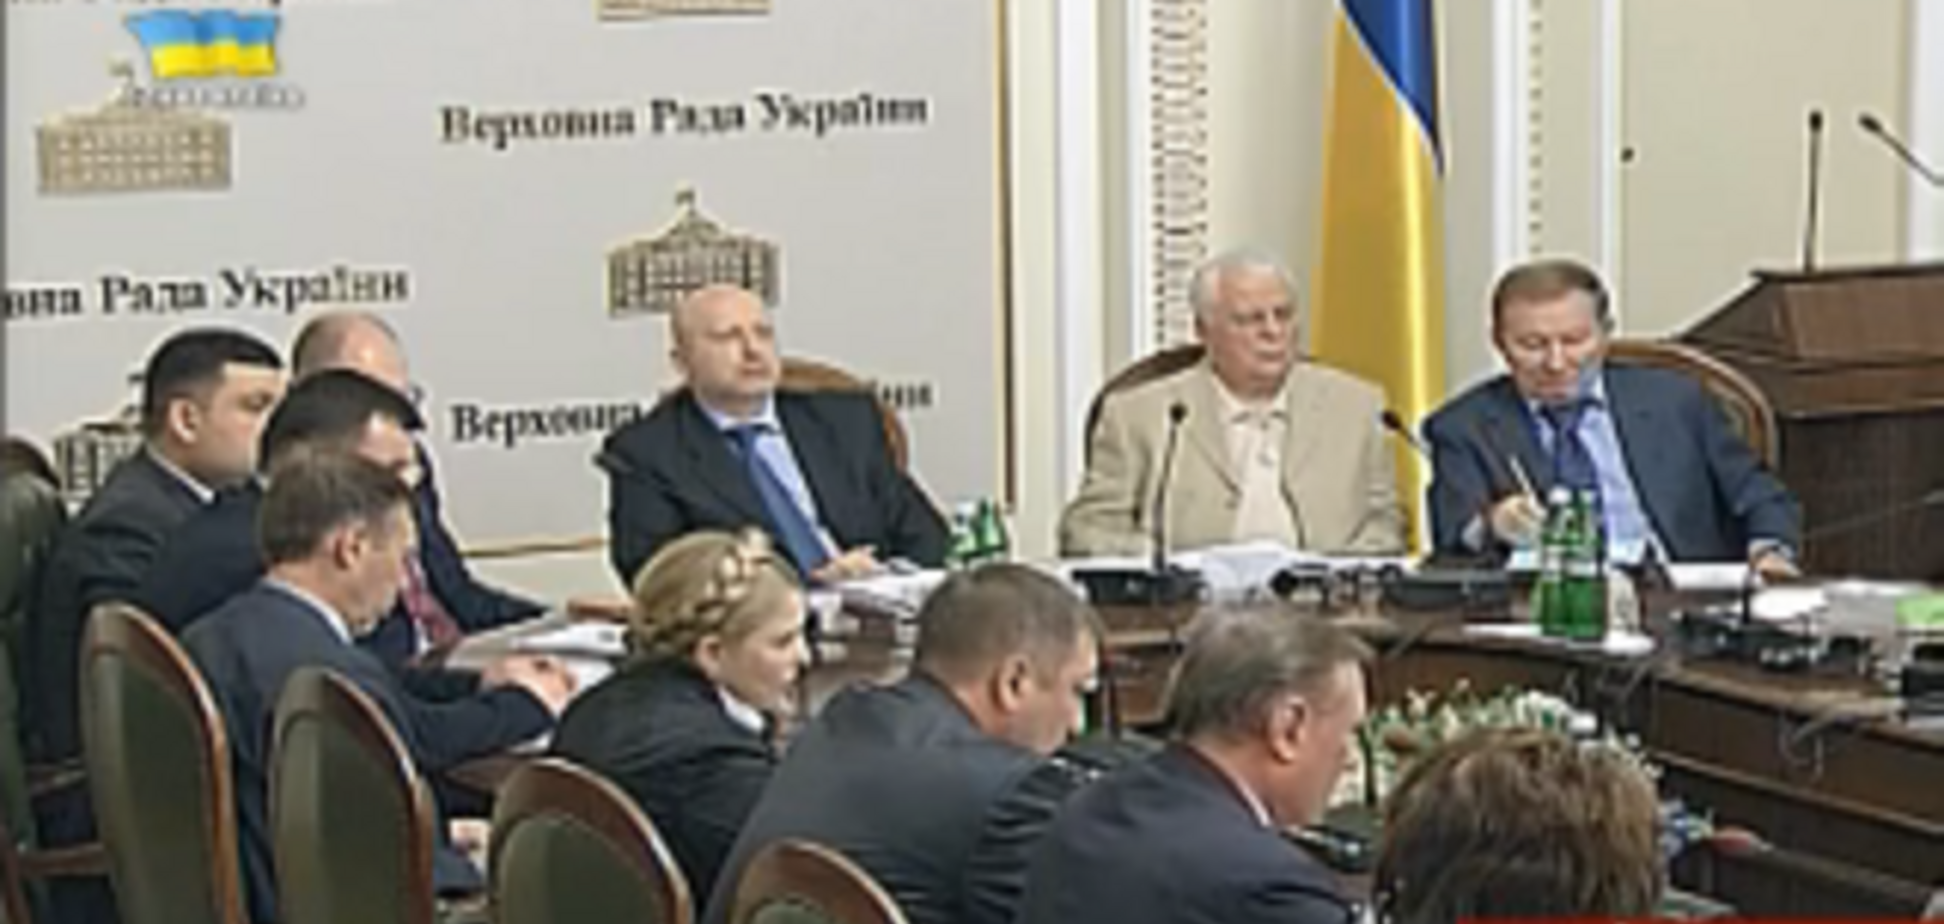 Кабмин, Кучма и Кравчук с круглыми столами единства Украины отправятся в турне по регионам